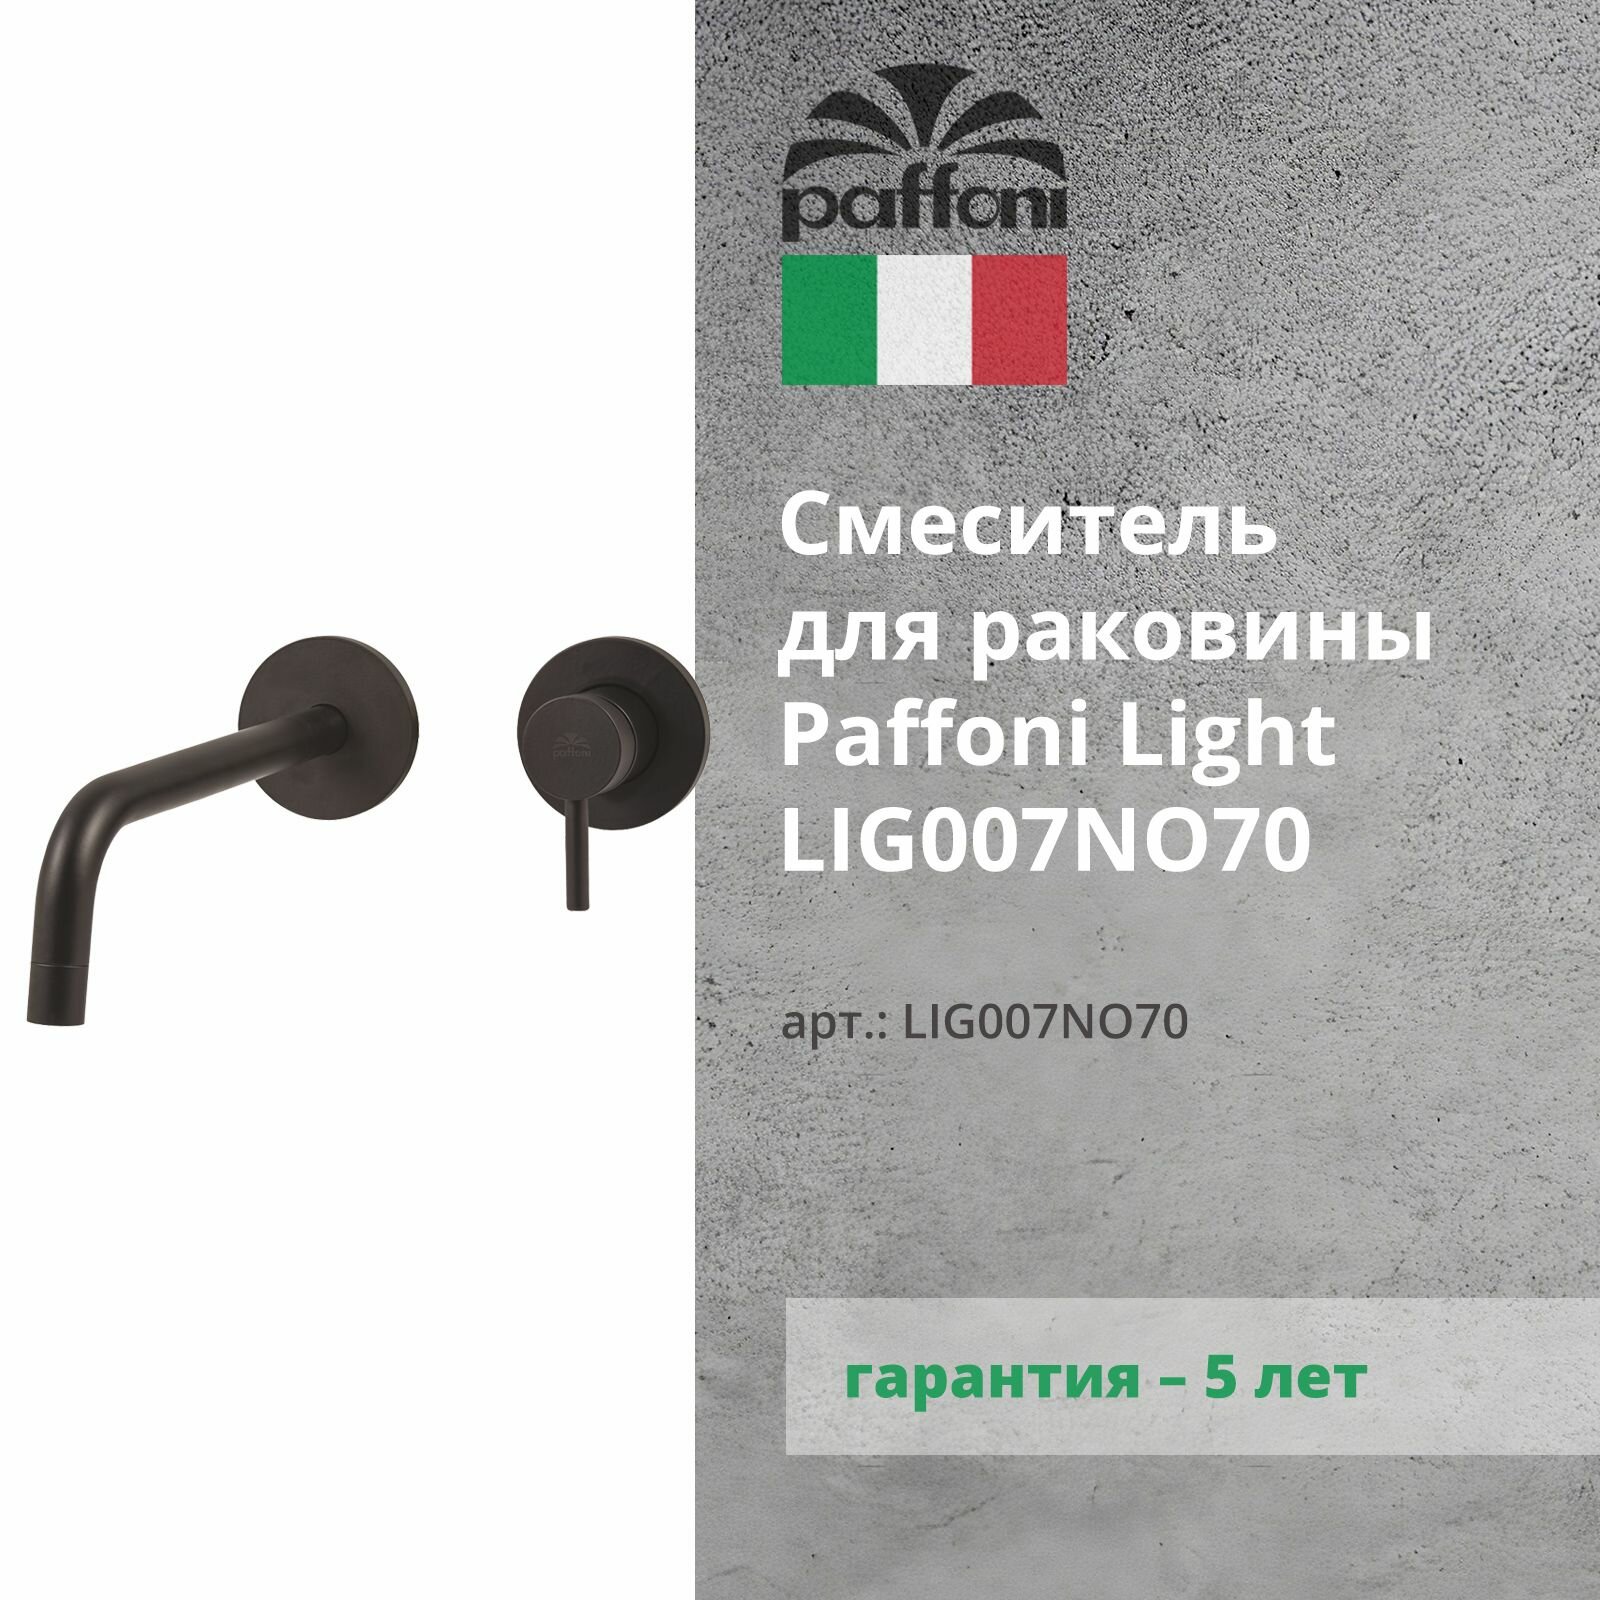 Смеситель для раковины Paffoni Light LIG007NO70